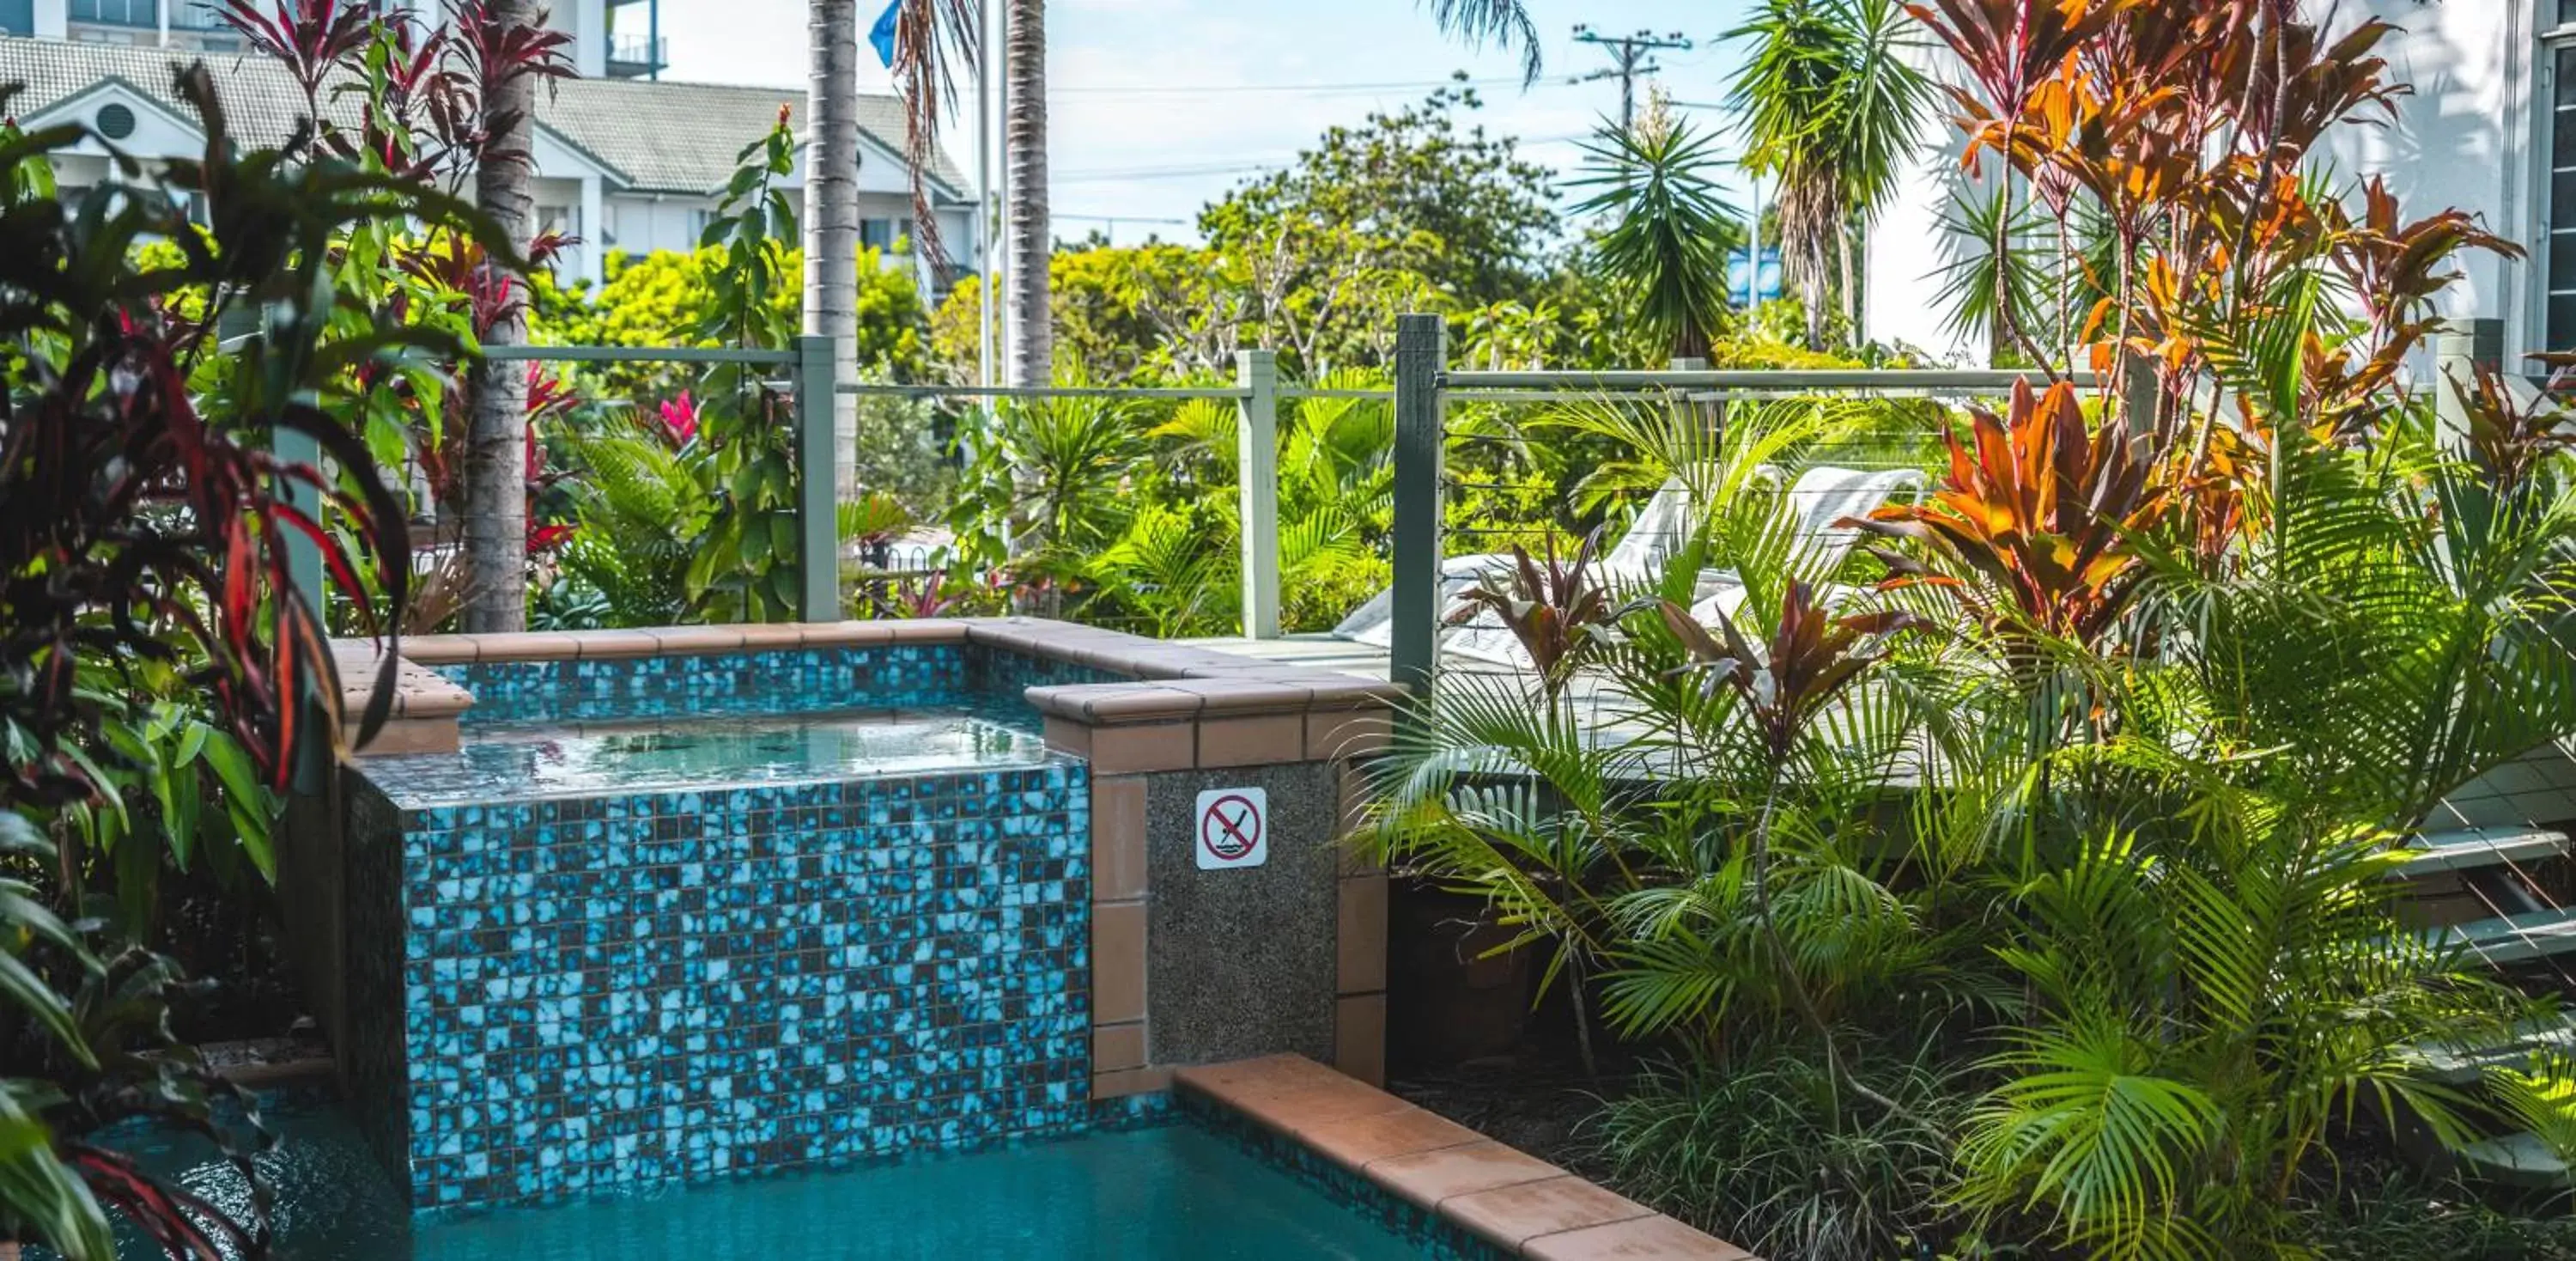 Garden in Heritage Cairns Hotel